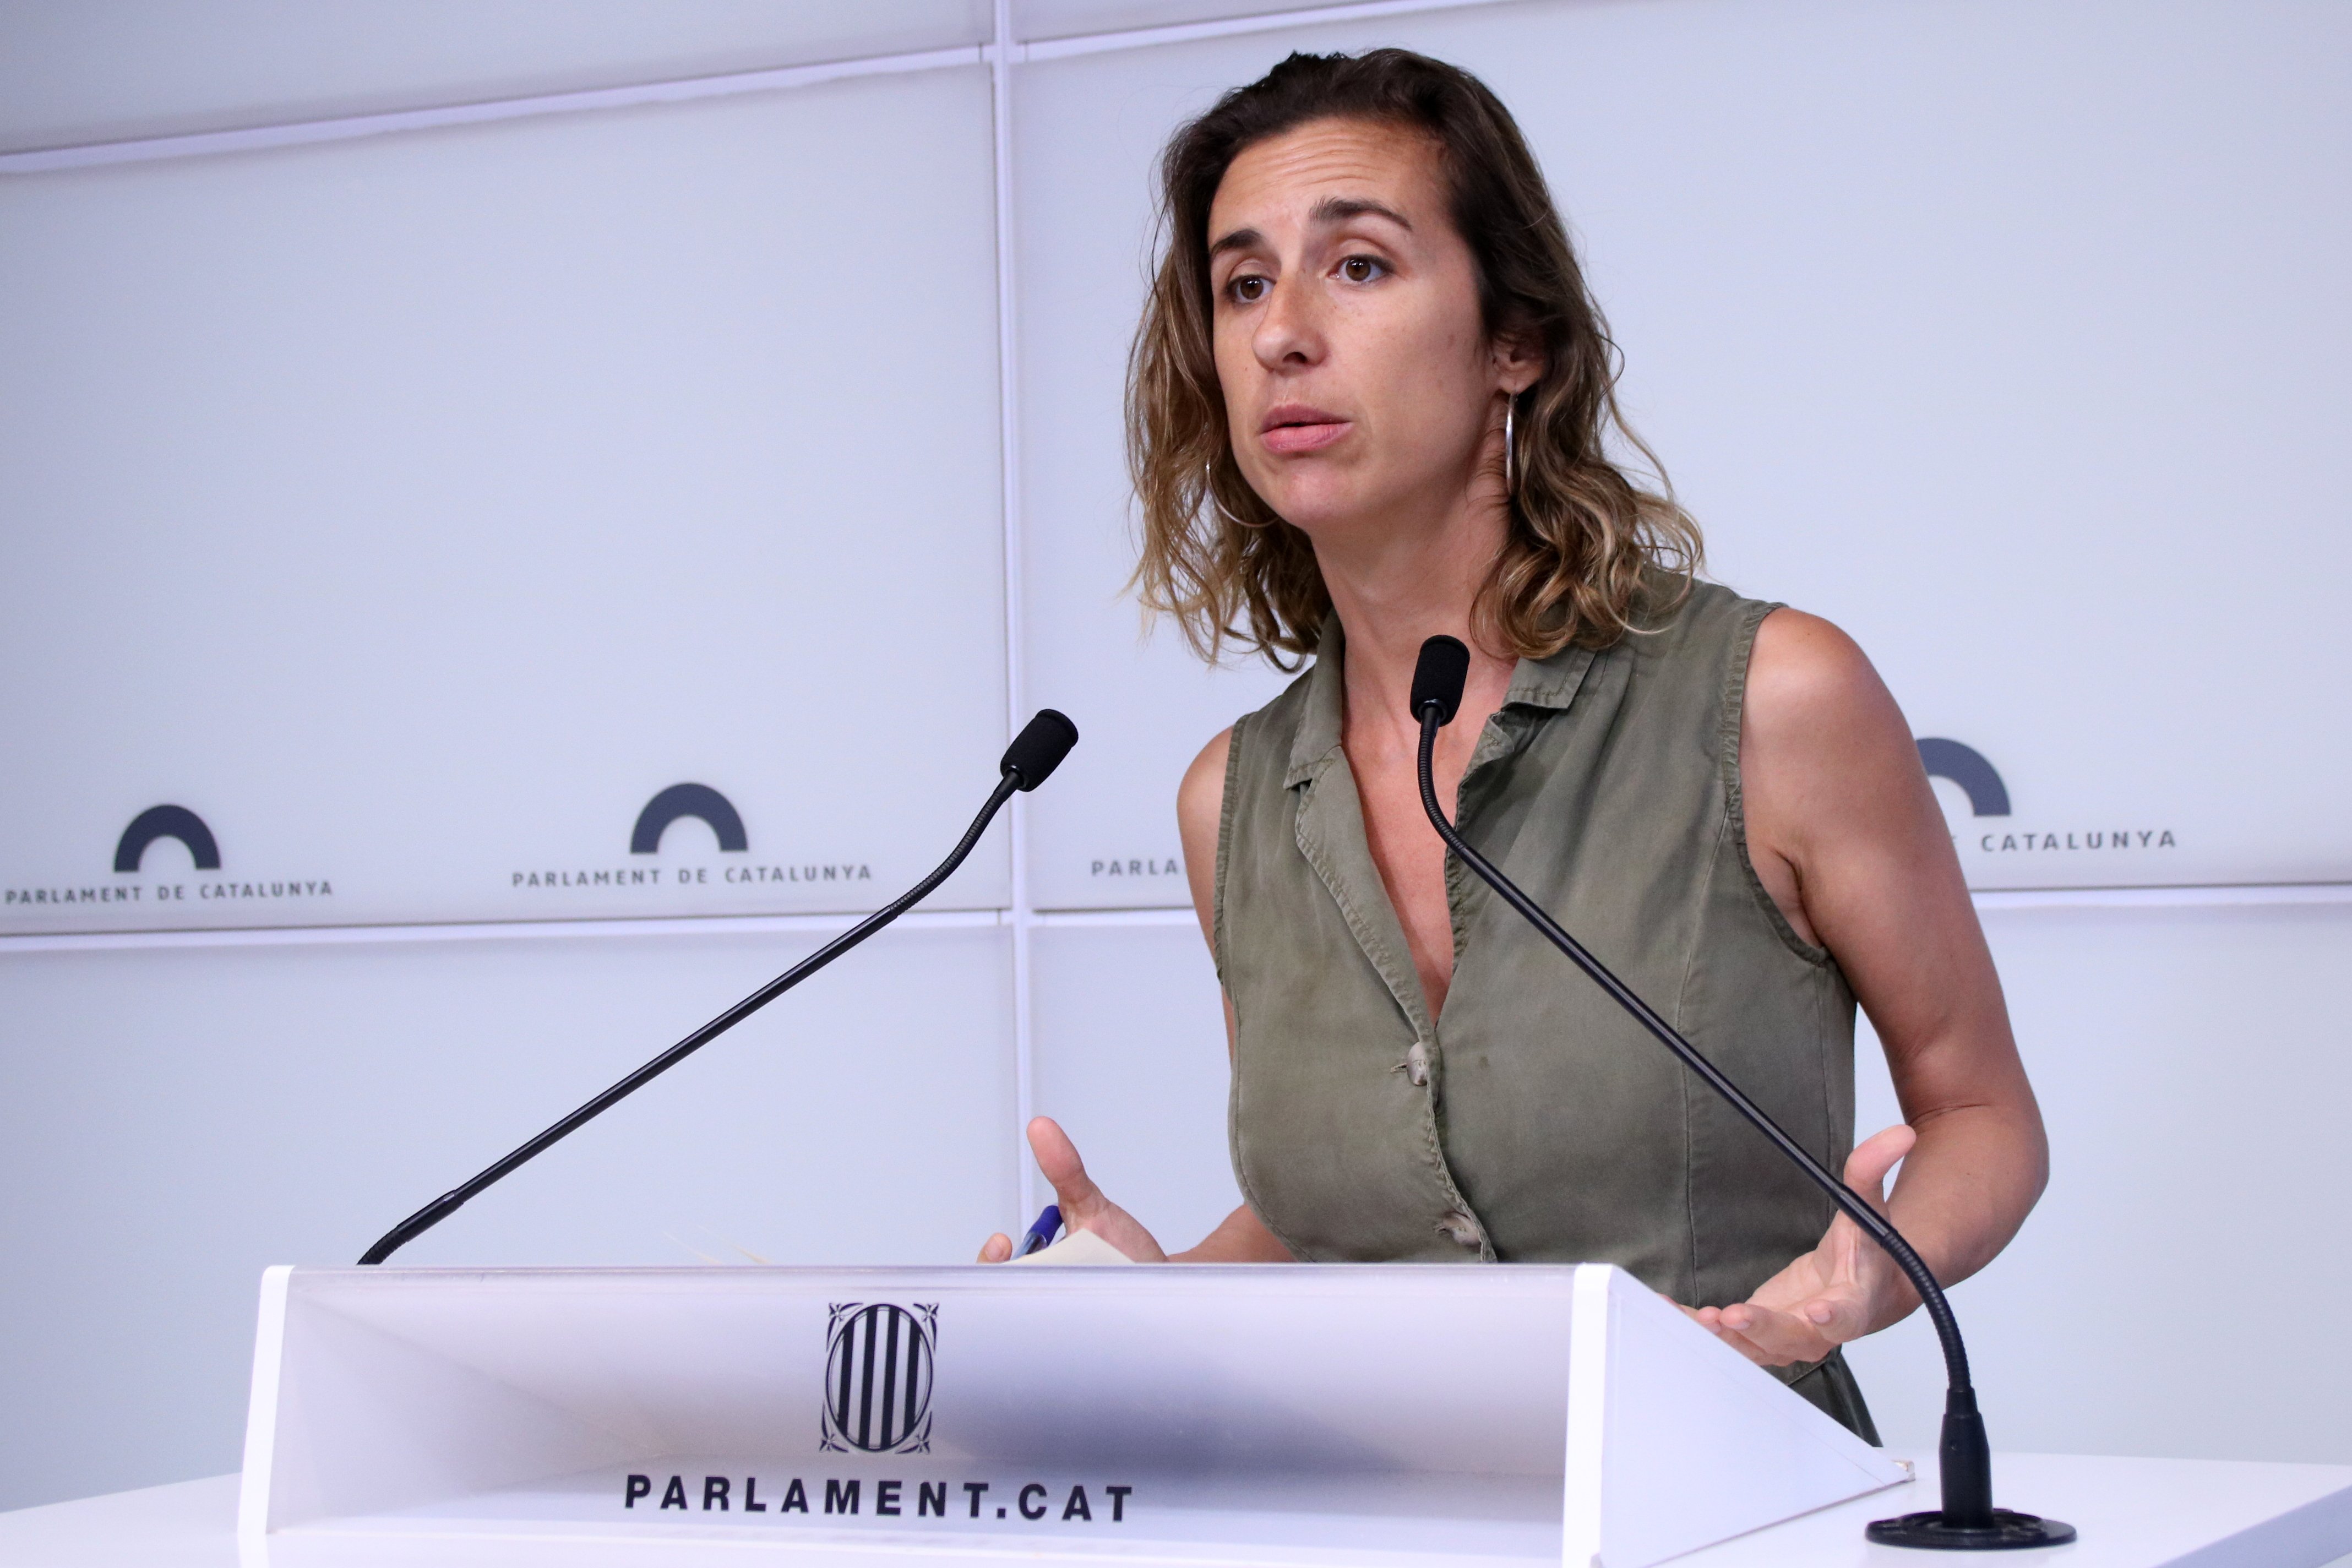 La CUP batallará el voto de Lluís Puig: "Entramos a la mesa para defender derechos"